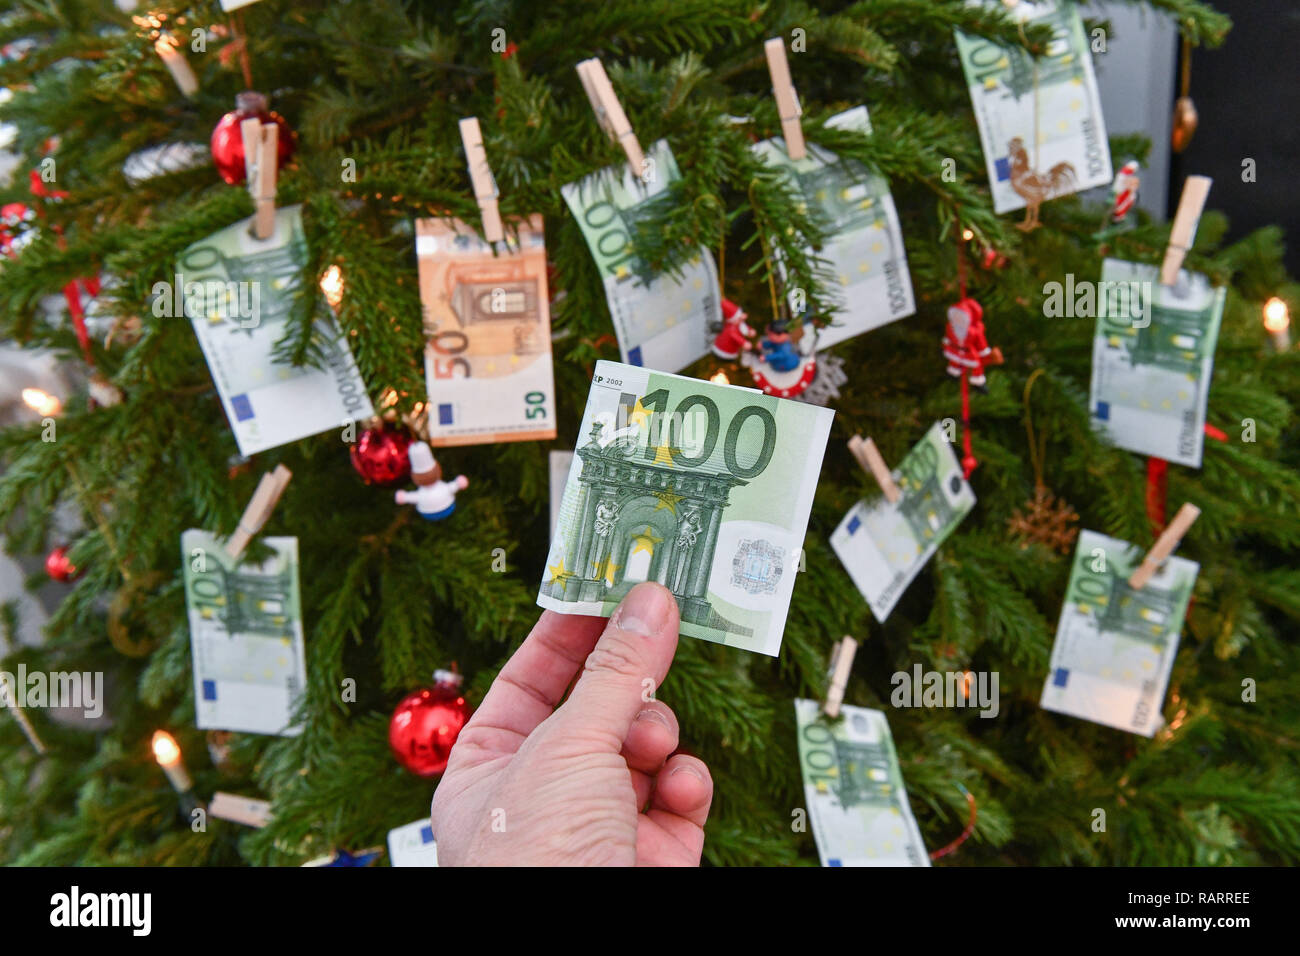 Foto simbolico, dono del denaro, Natale, Symbolfoto, Geldgeschenk, Weihnachten Foto Stock